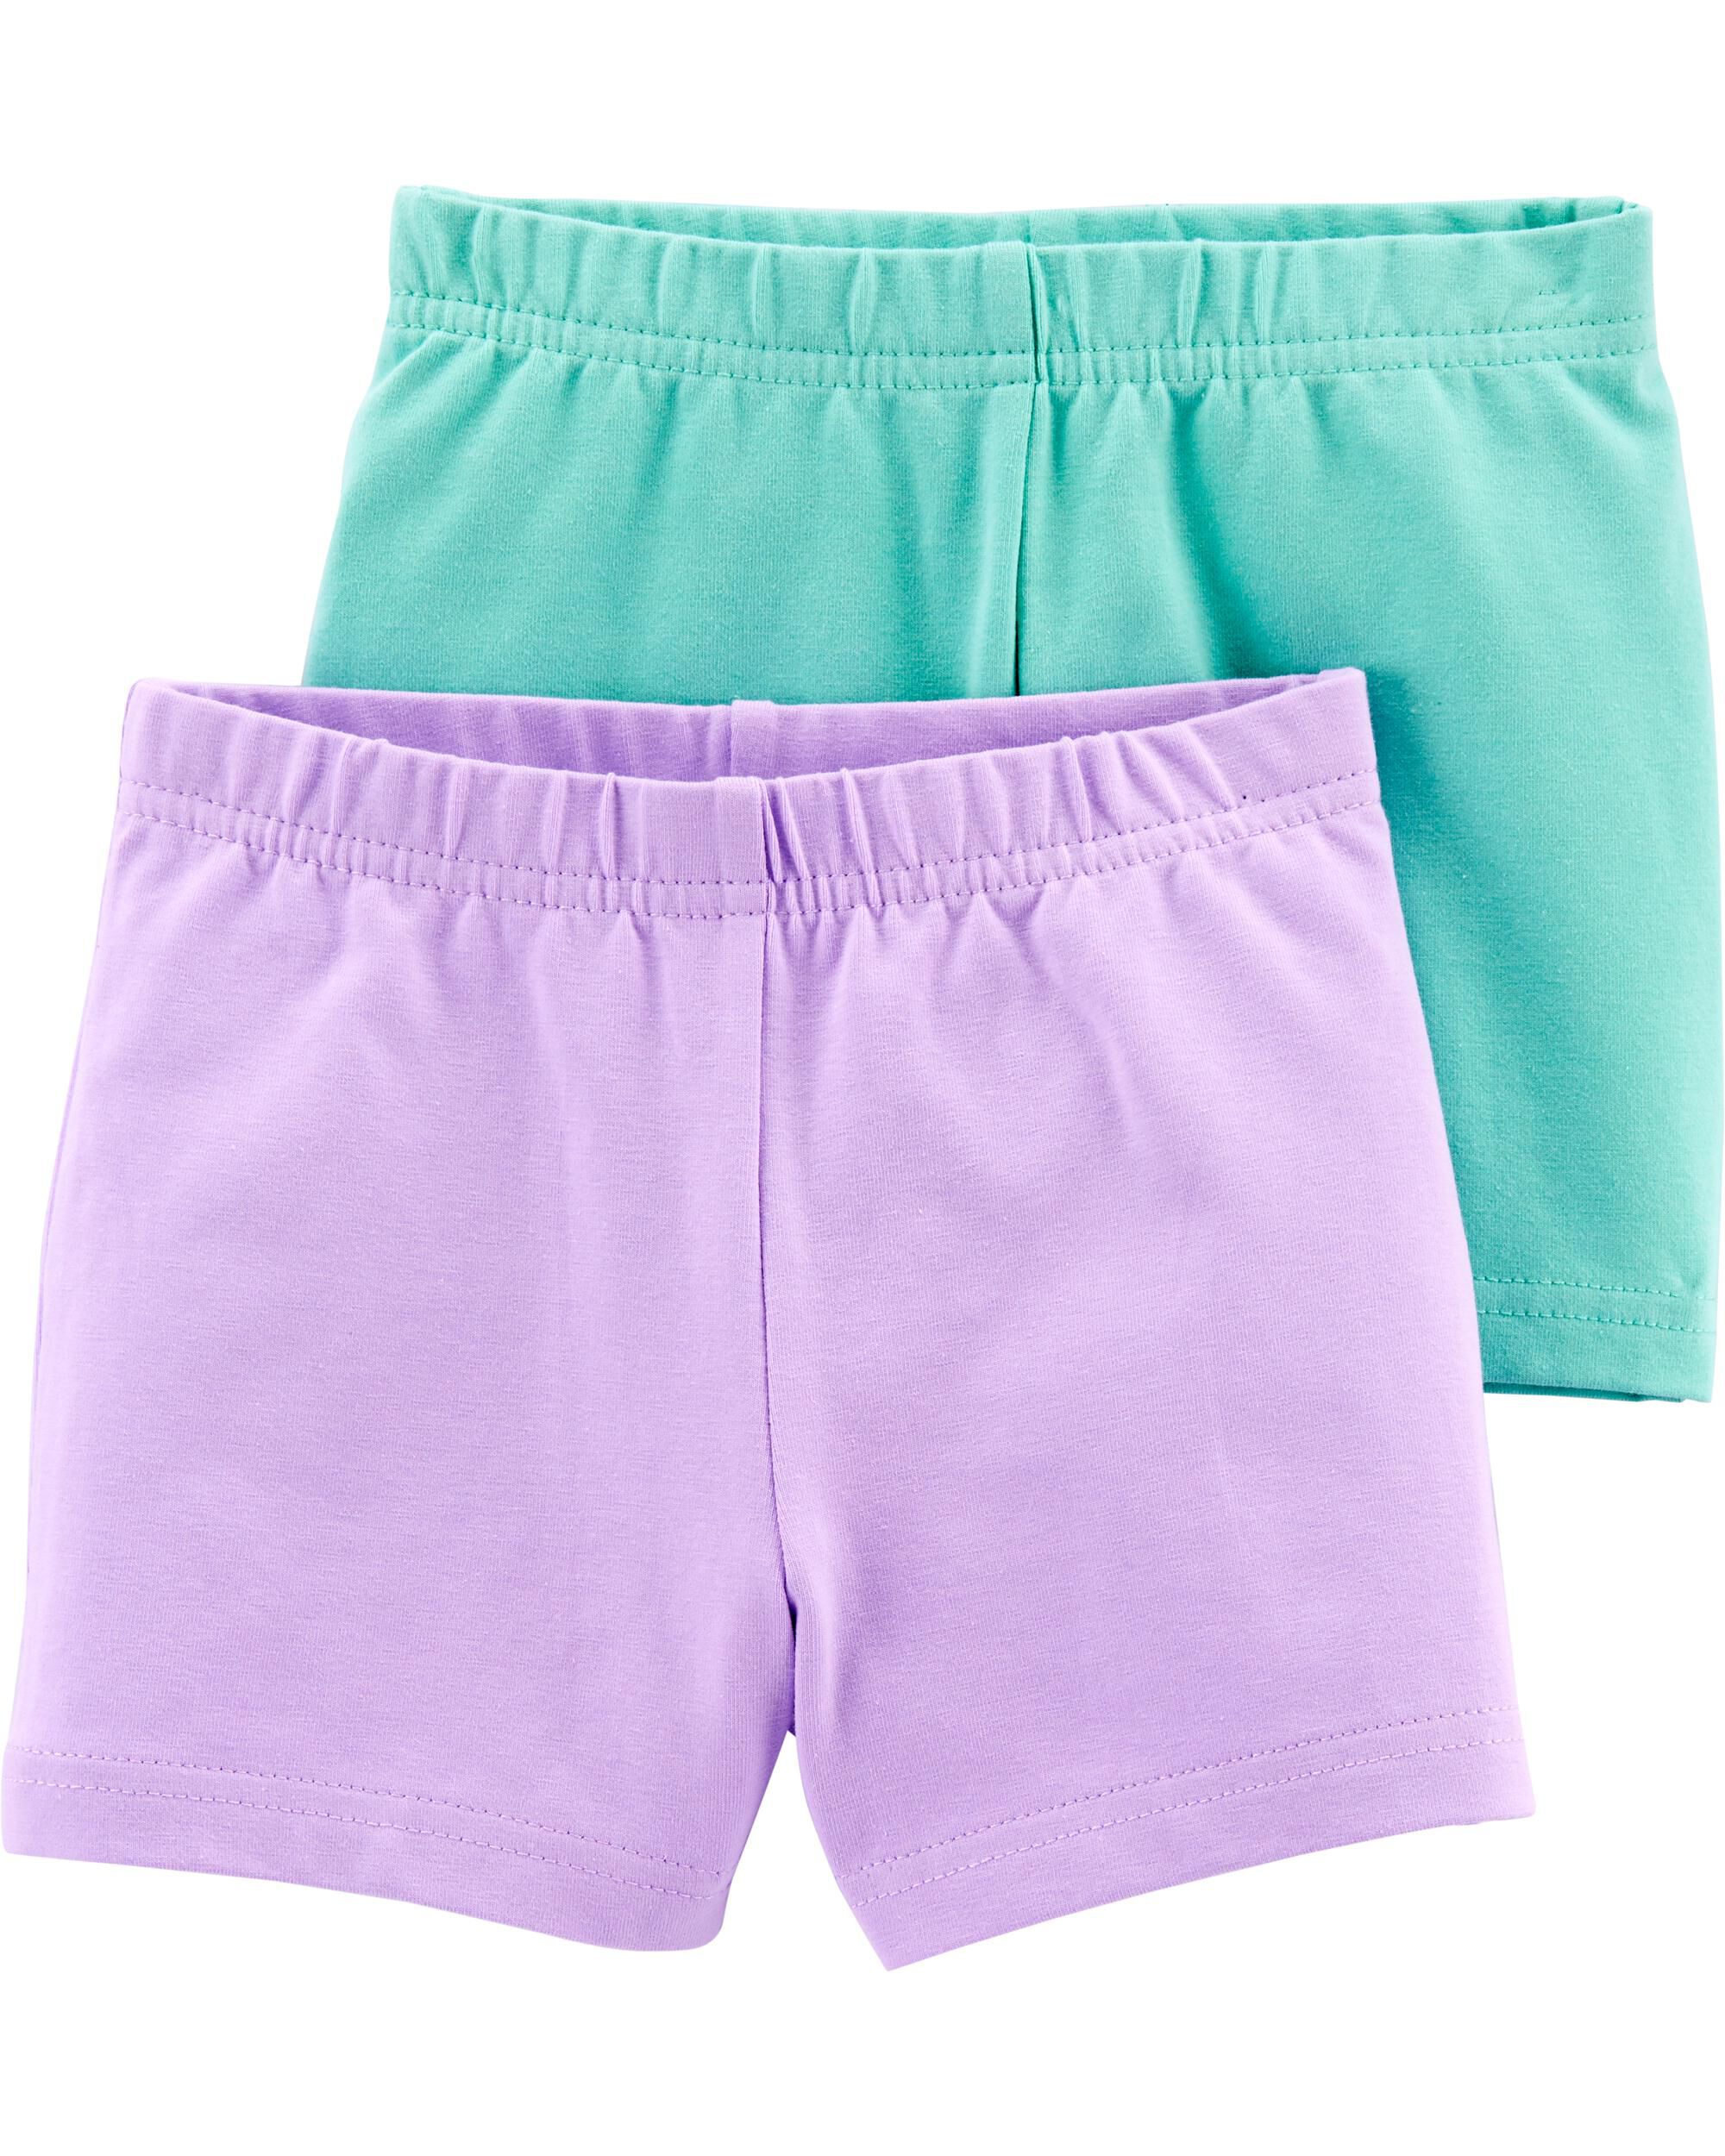 Carters Toddler Girls 2-Pack Tumbling Shorts